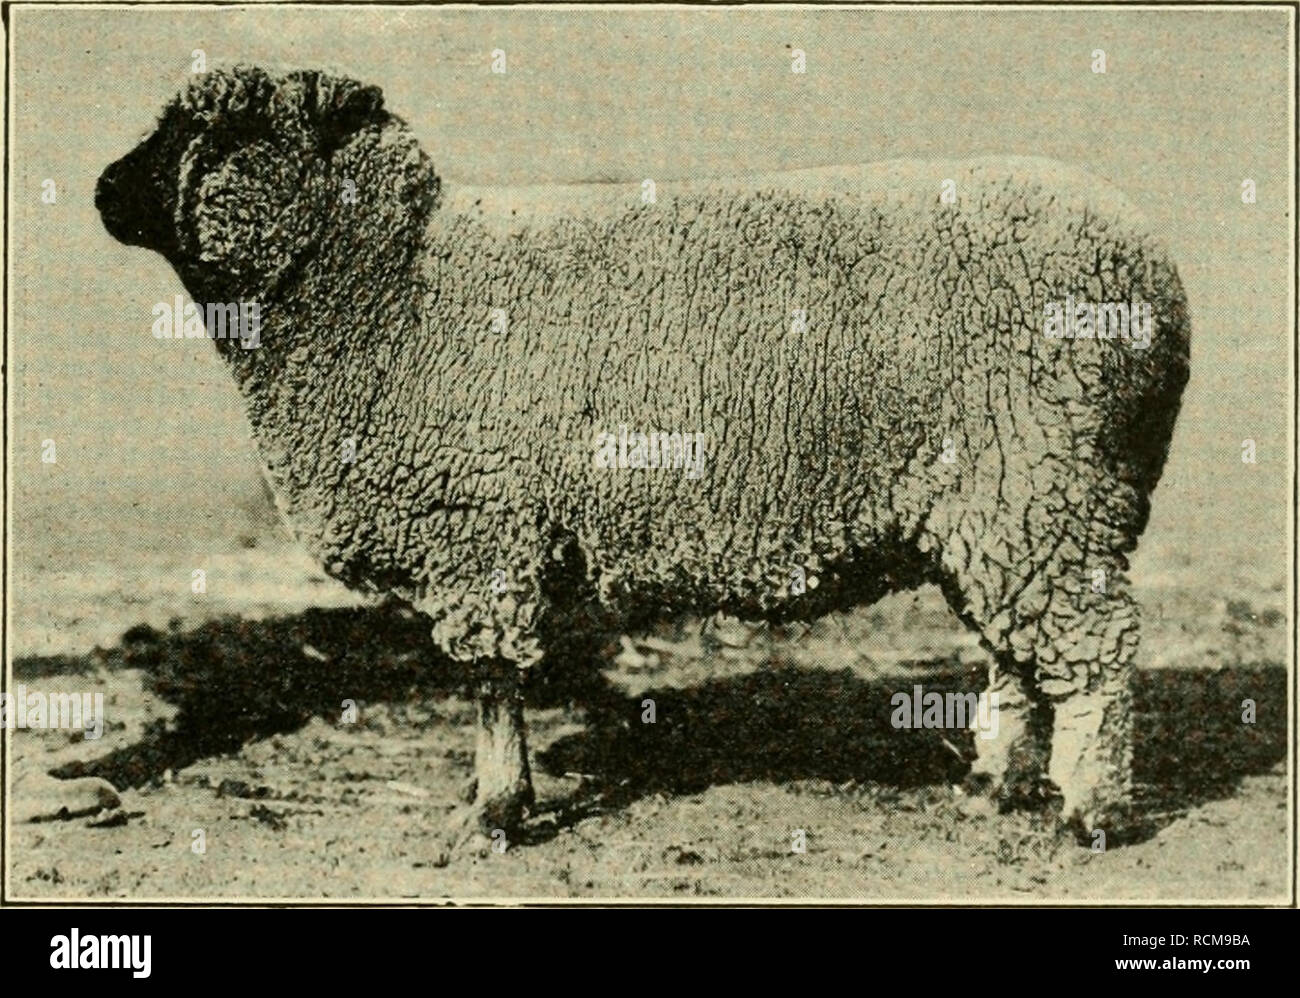 Gli elementi della pratica agricola. L'agricoltura. Pecore 221 bouillet,  altri di lana razza, nata in Francia. È più grande del Merino, ha una  migliore Httle carcassa di montone, generalmente è stropicciata